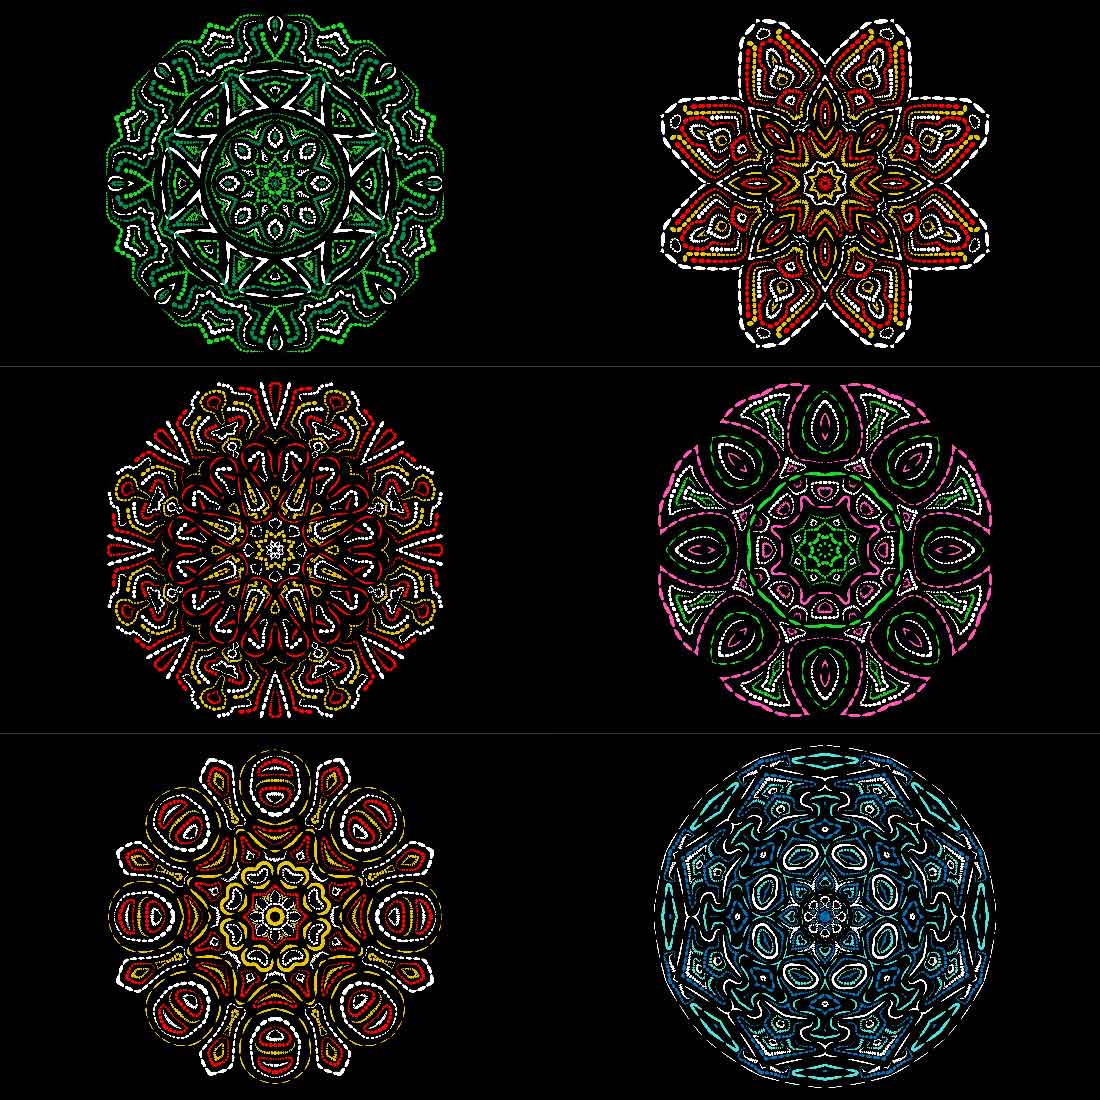 6 Mandala Art Bundles cover image.